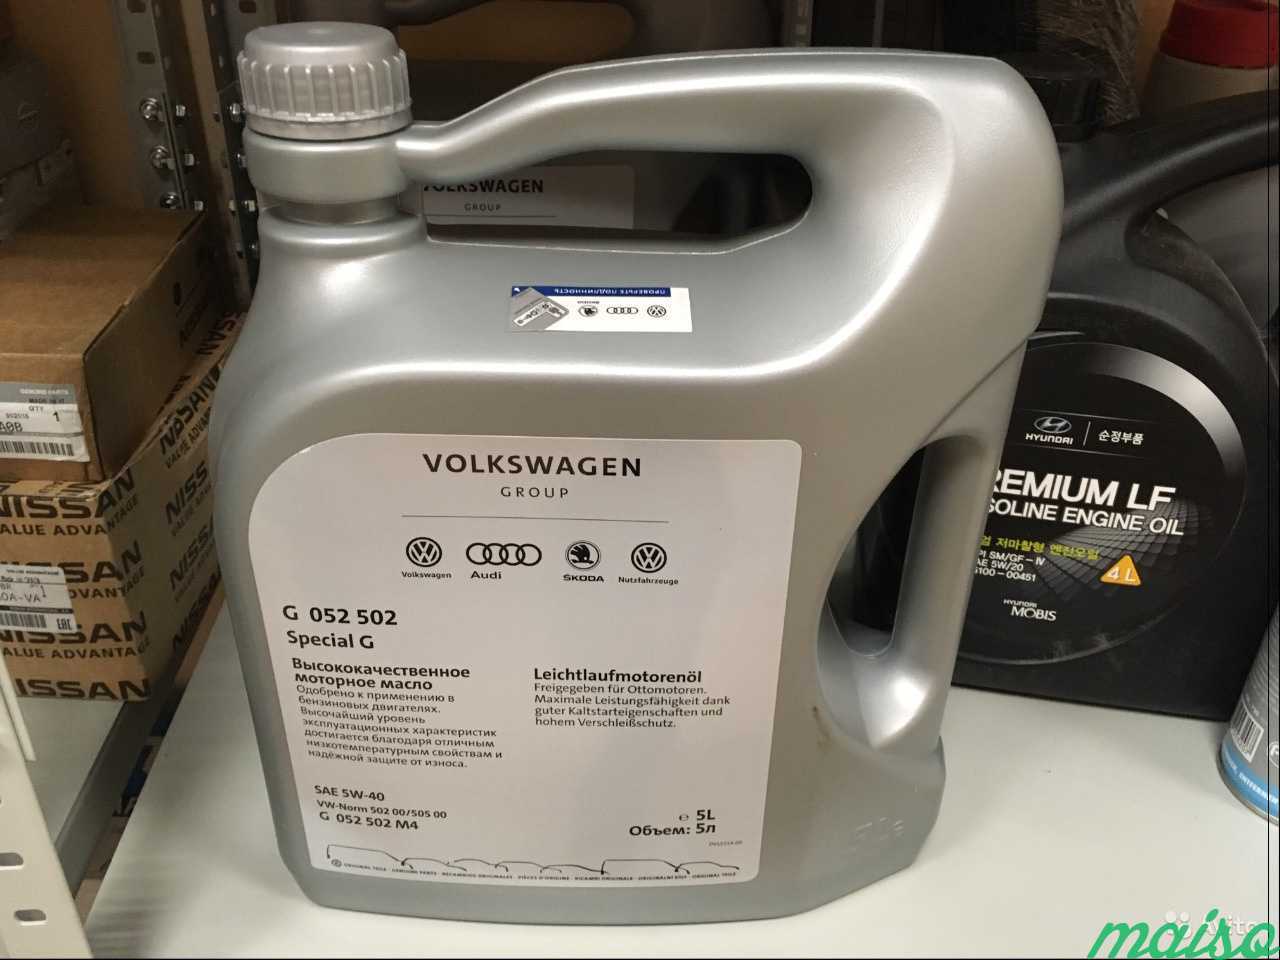 Volkswagen 5w 40